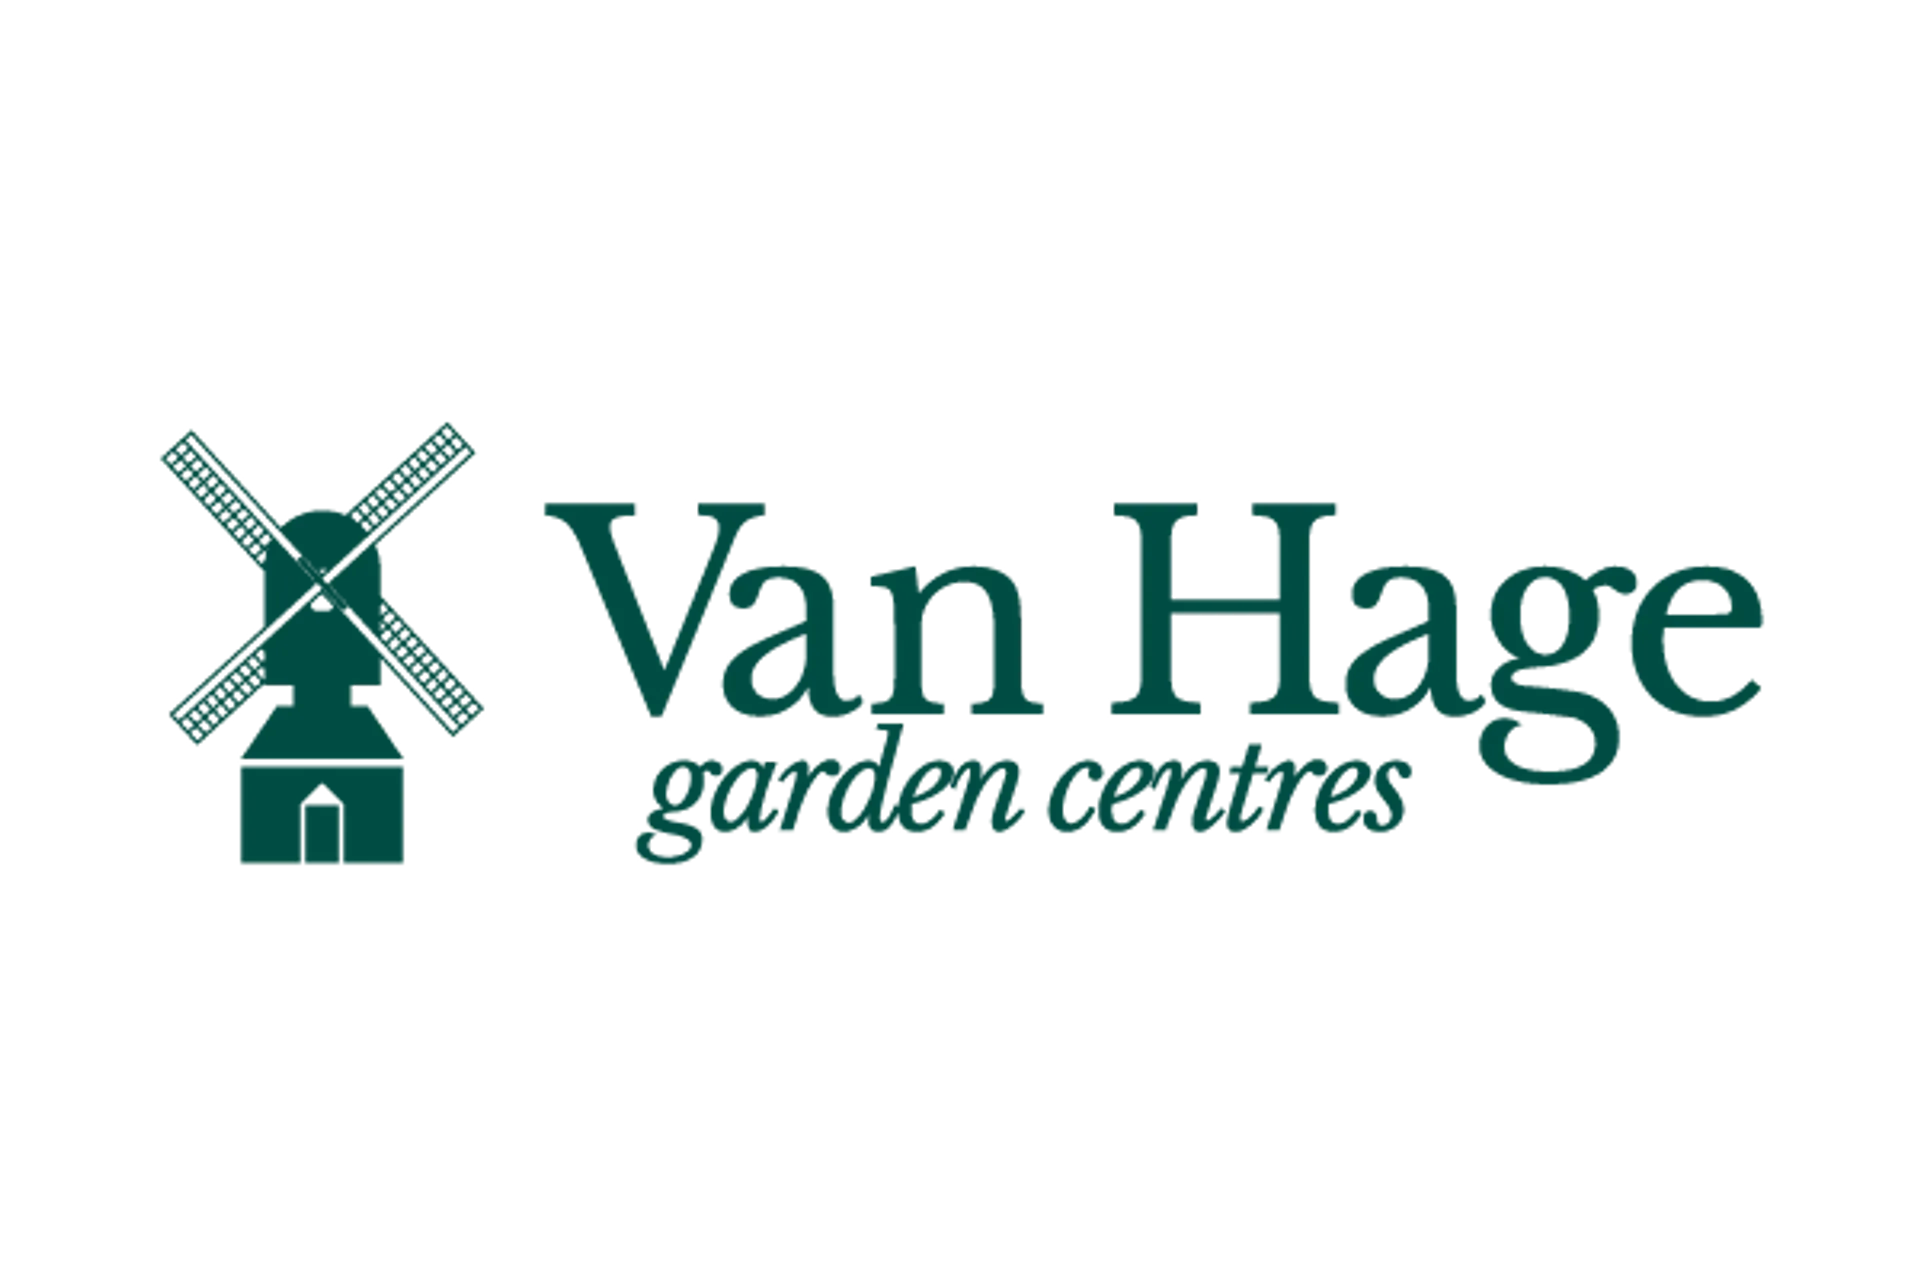 VAN HAGE logo